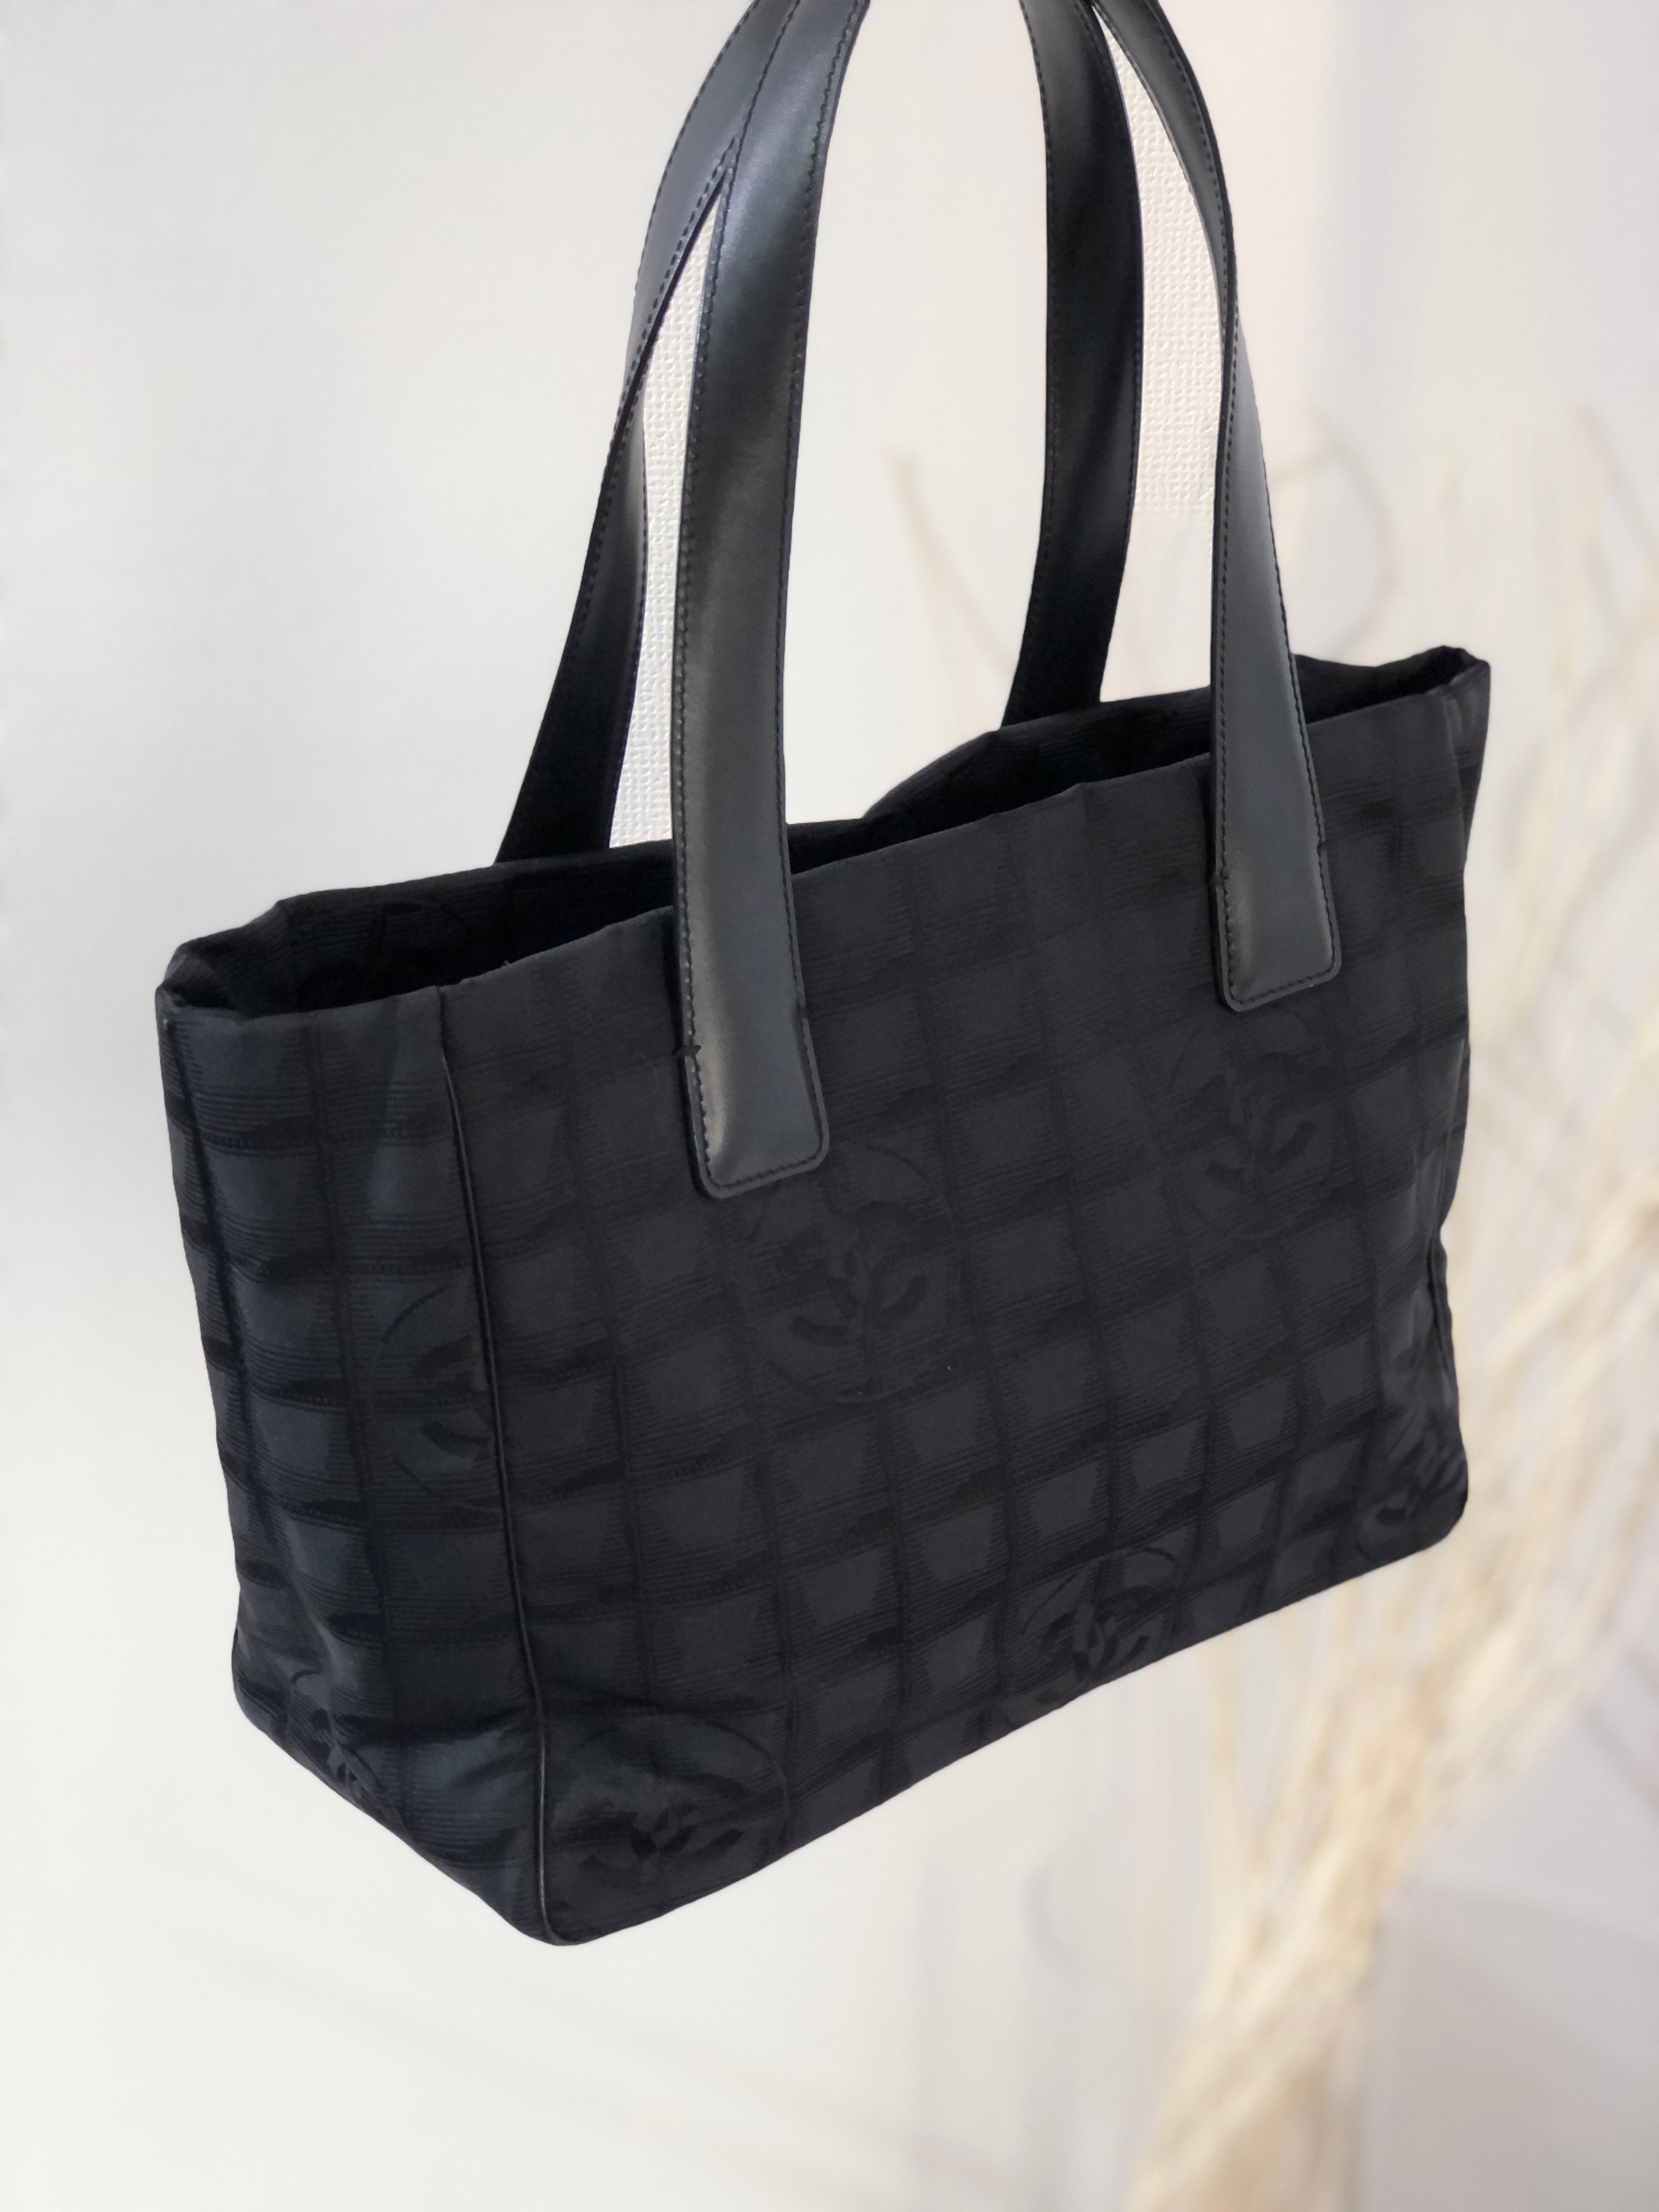 CHANEL New Travel Line PM Nylon Jacquard Handbag Tote Bag Black